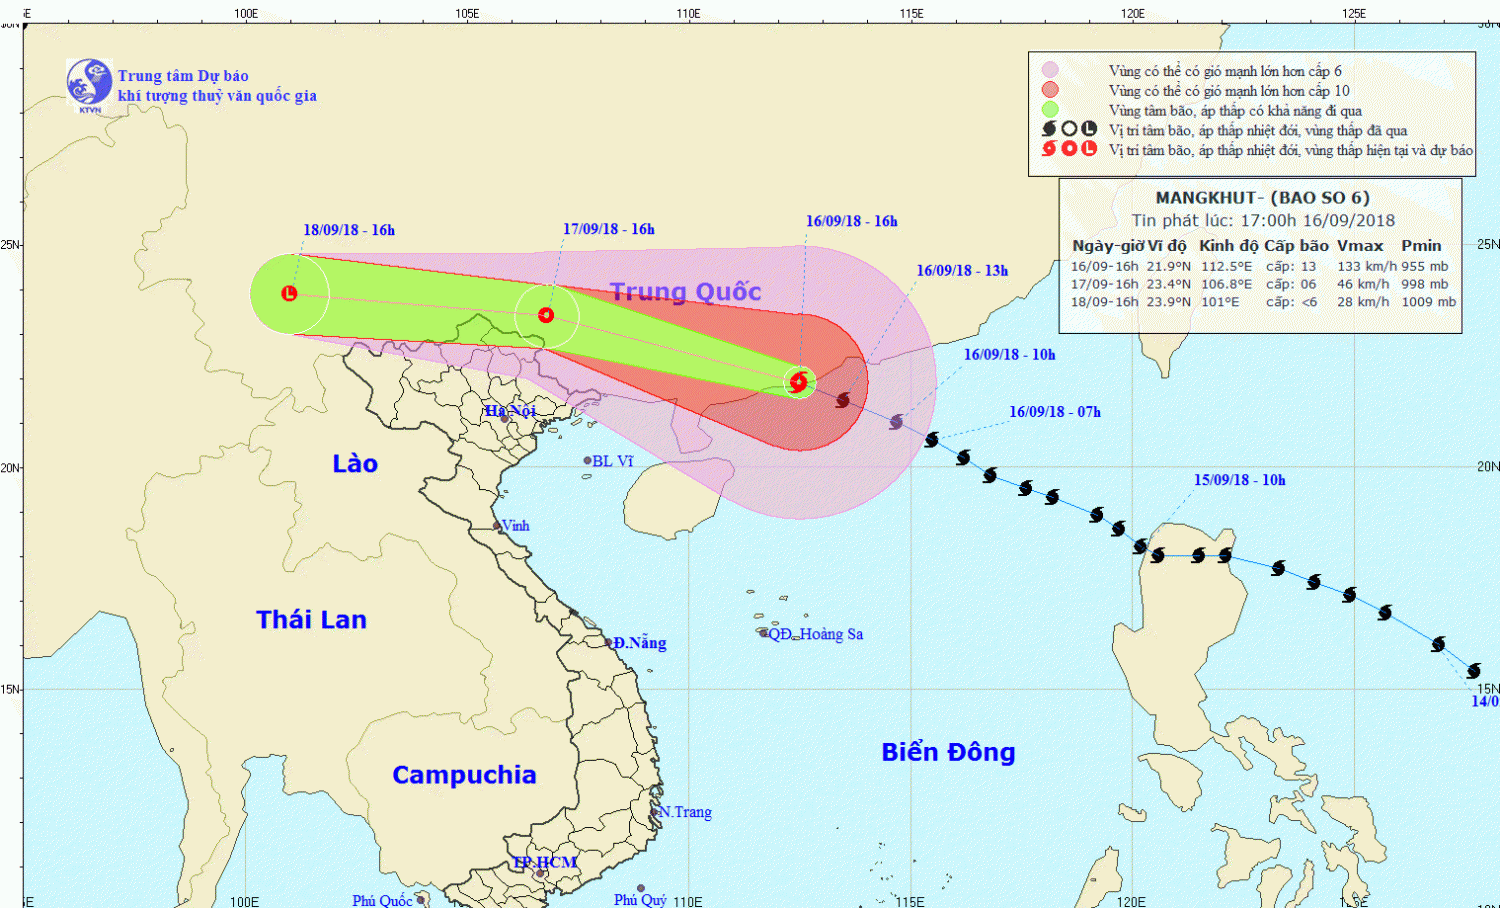 Tin bão trên đất liền Trung Quốc - cơn bão số 6 (17h00 ngày 16/9)